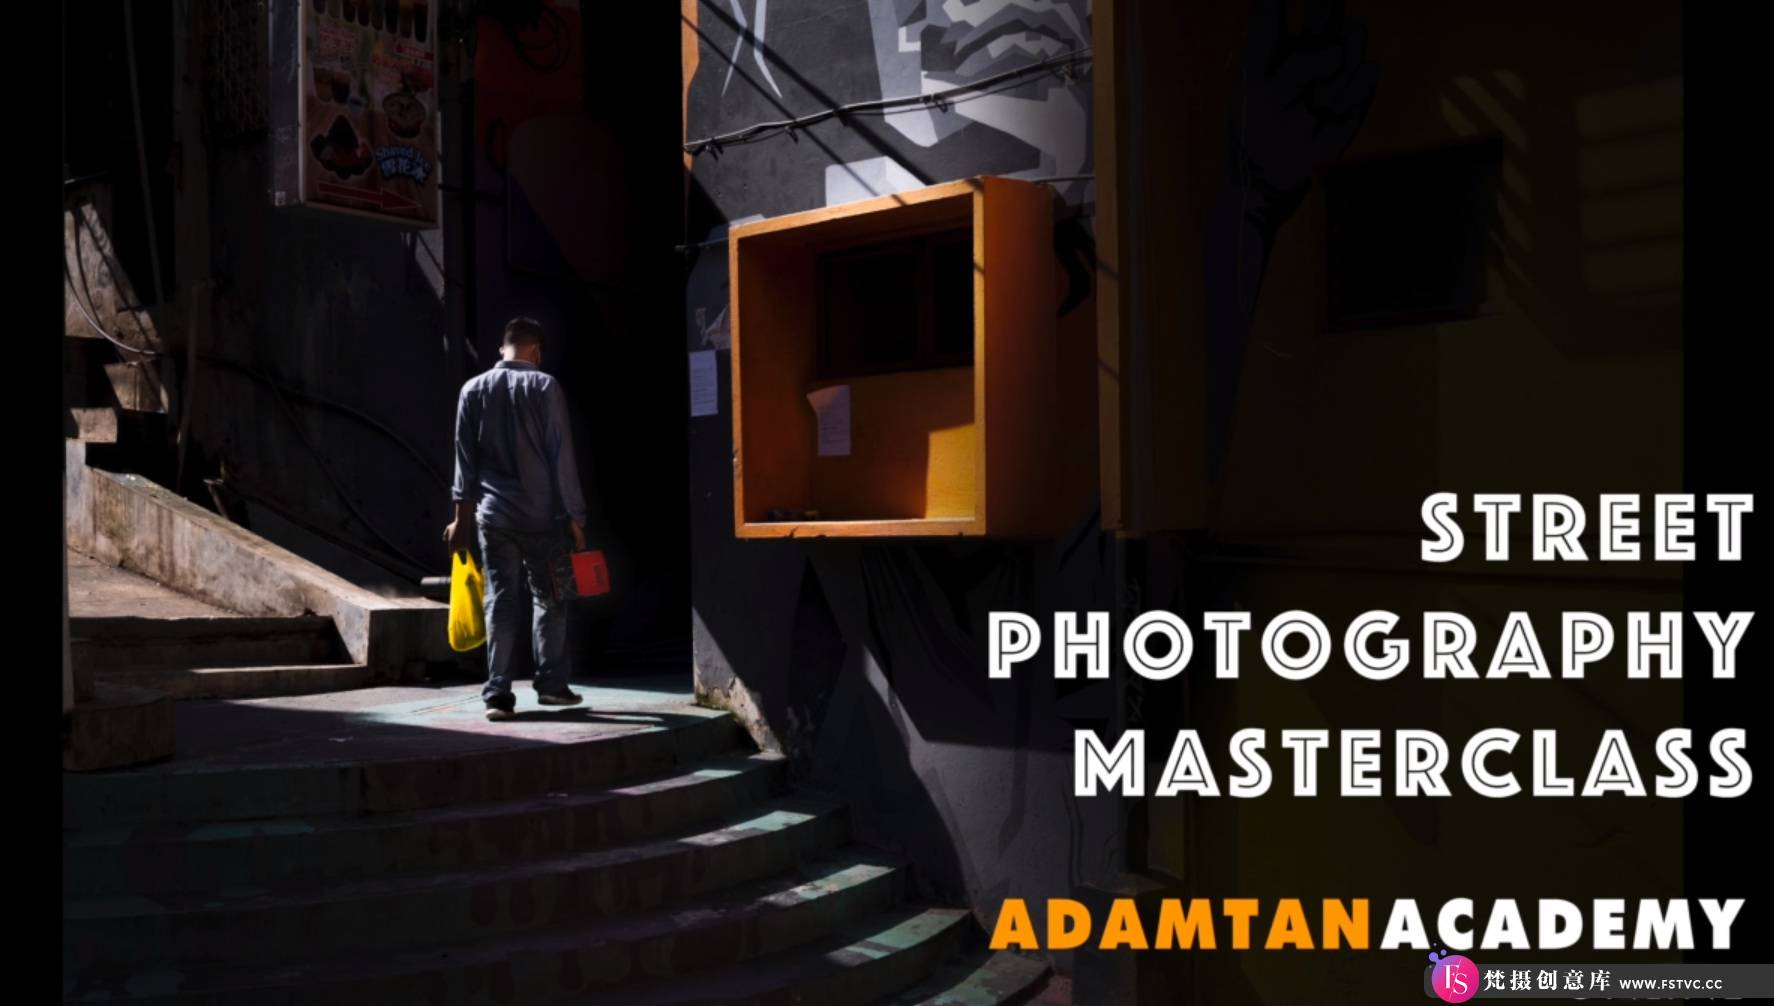 [风光摄影教程]摄影师 Adam Tan 城市街头摄影构图大师班教程-中英字幕-梵摄创意库